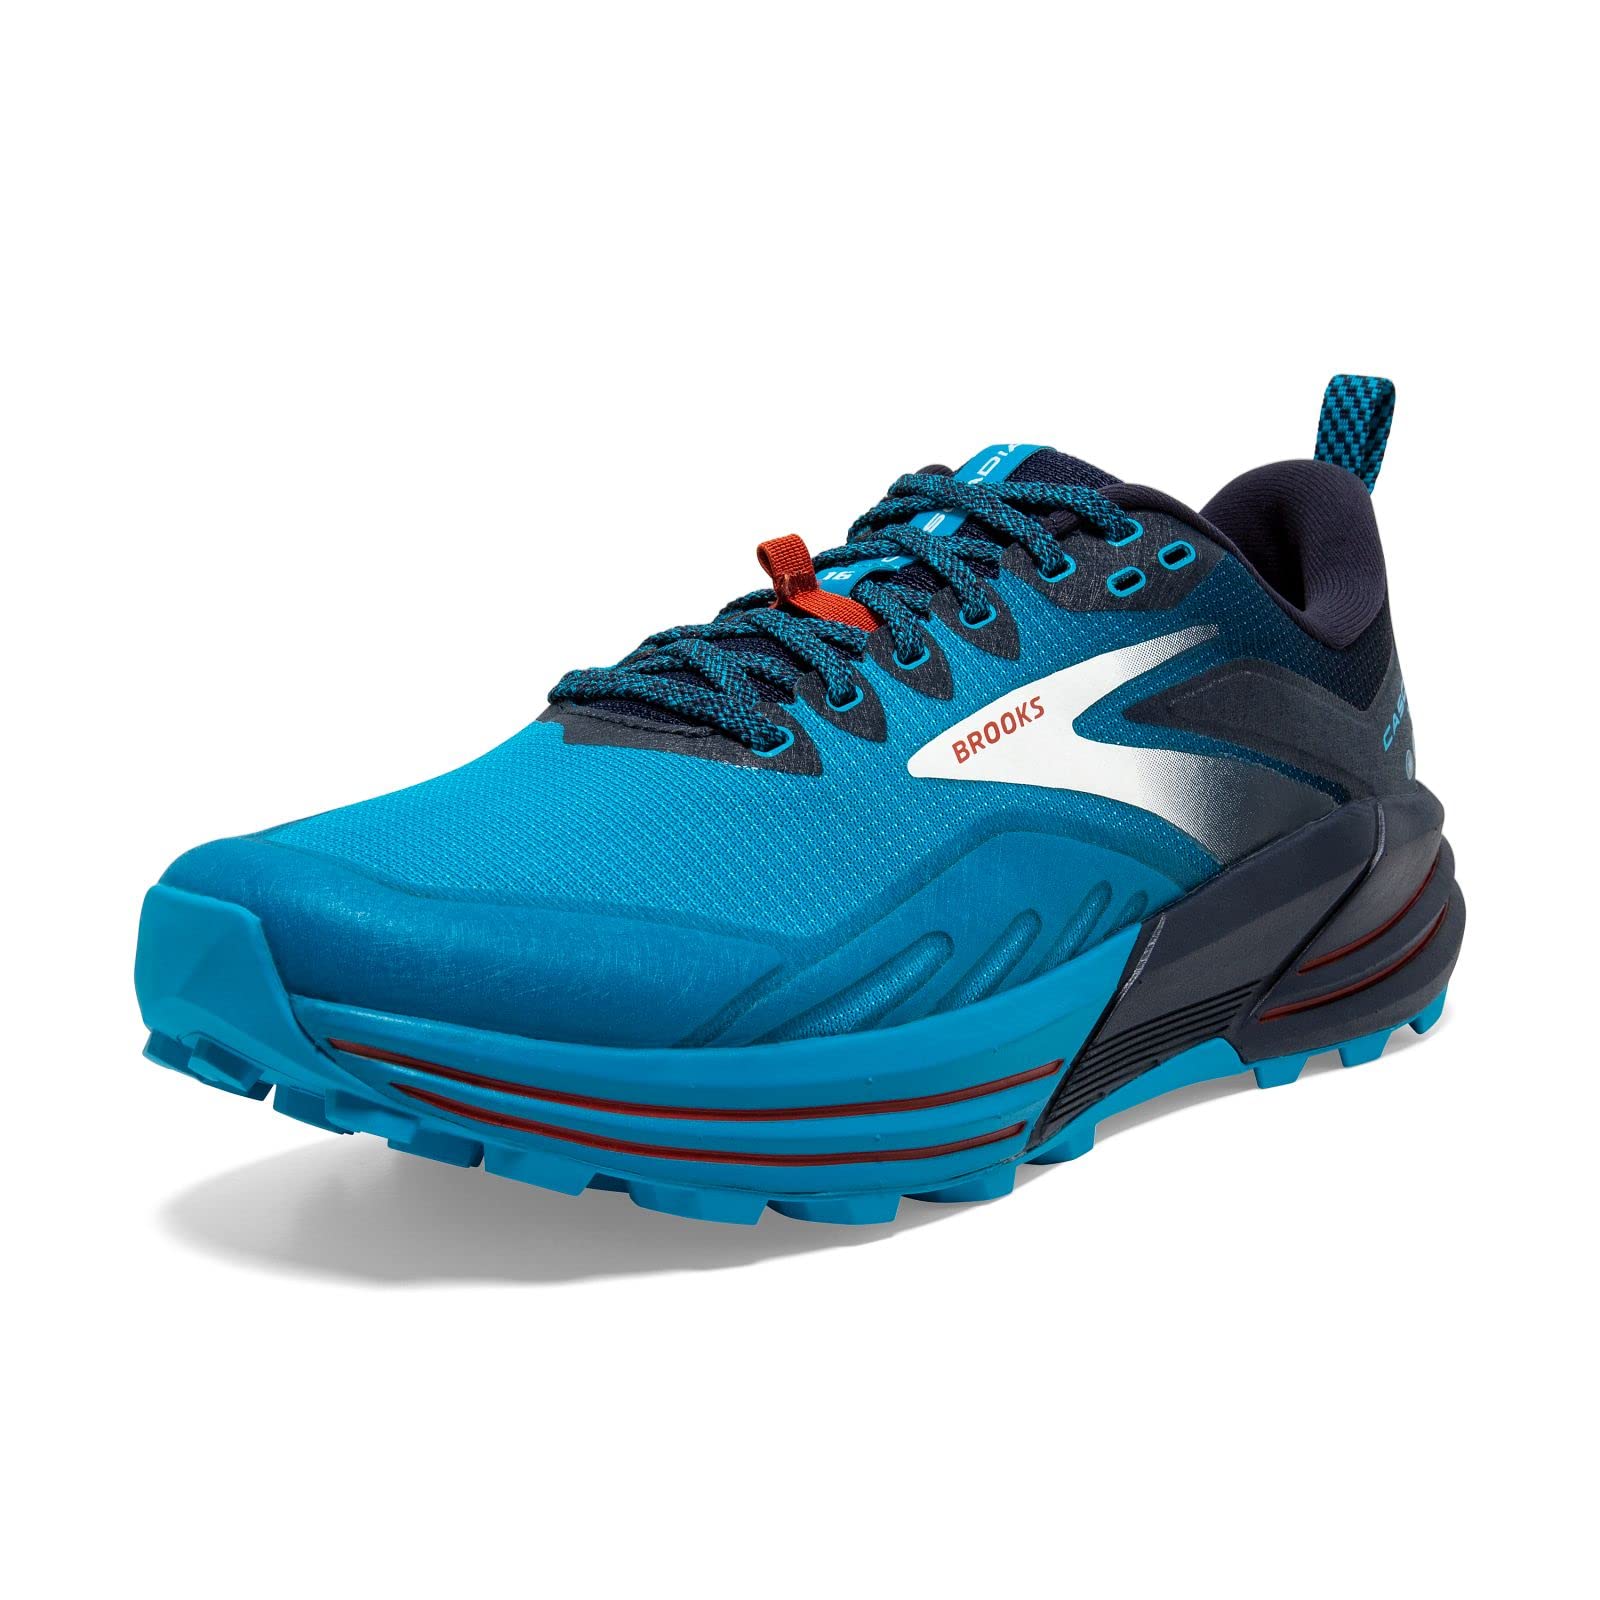 Brooks Herren Running Shoes, Blue, 44 EU